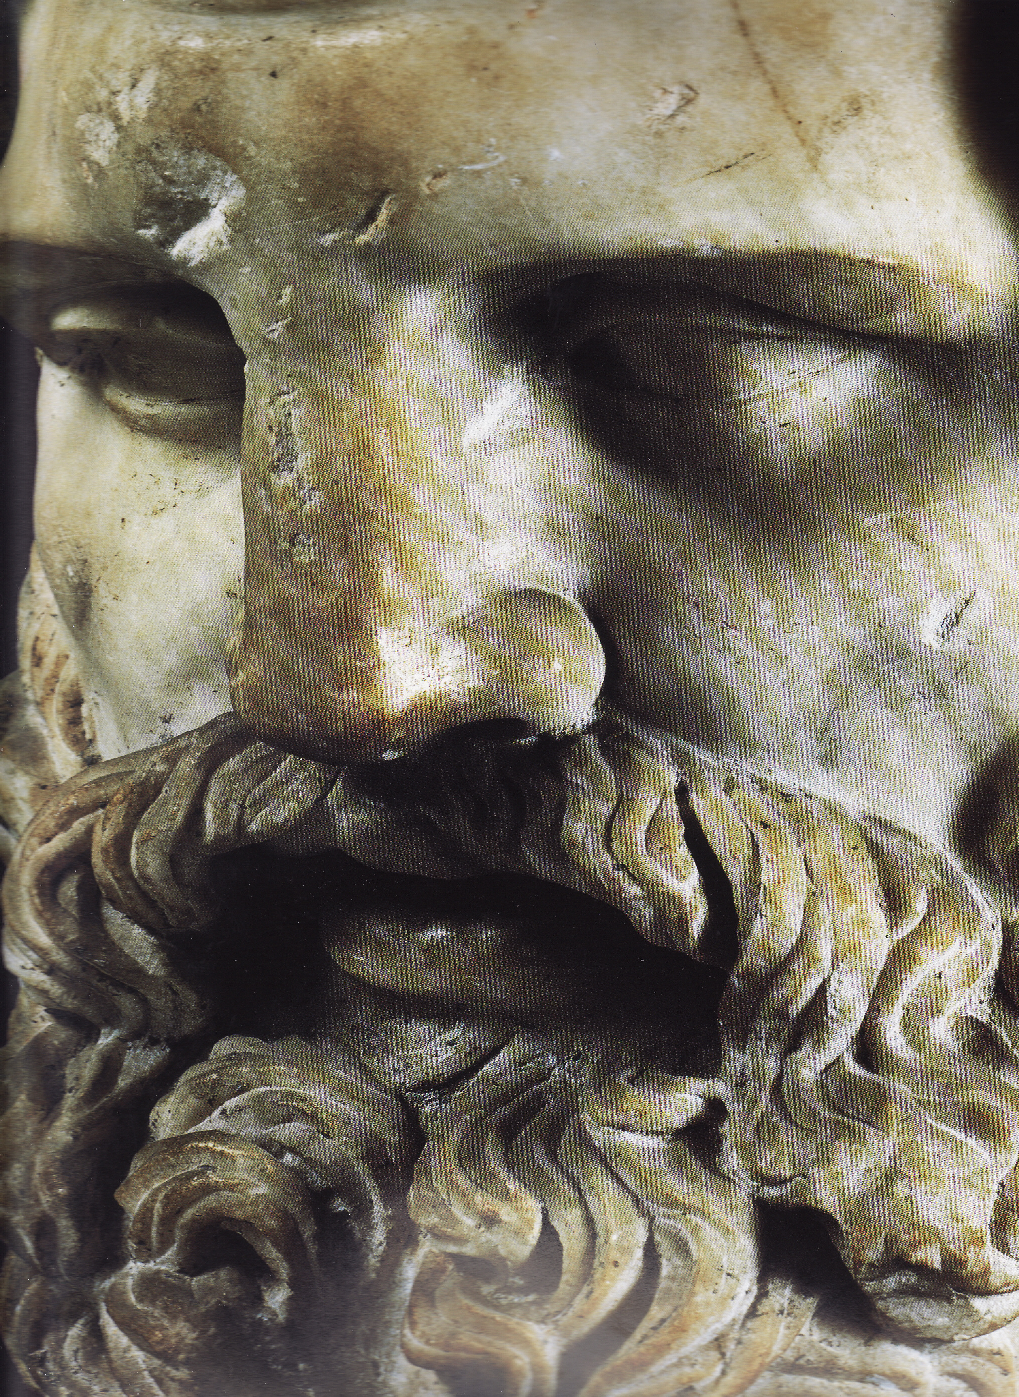 Obr. 17 Obličej mramorové sochy Jupitera